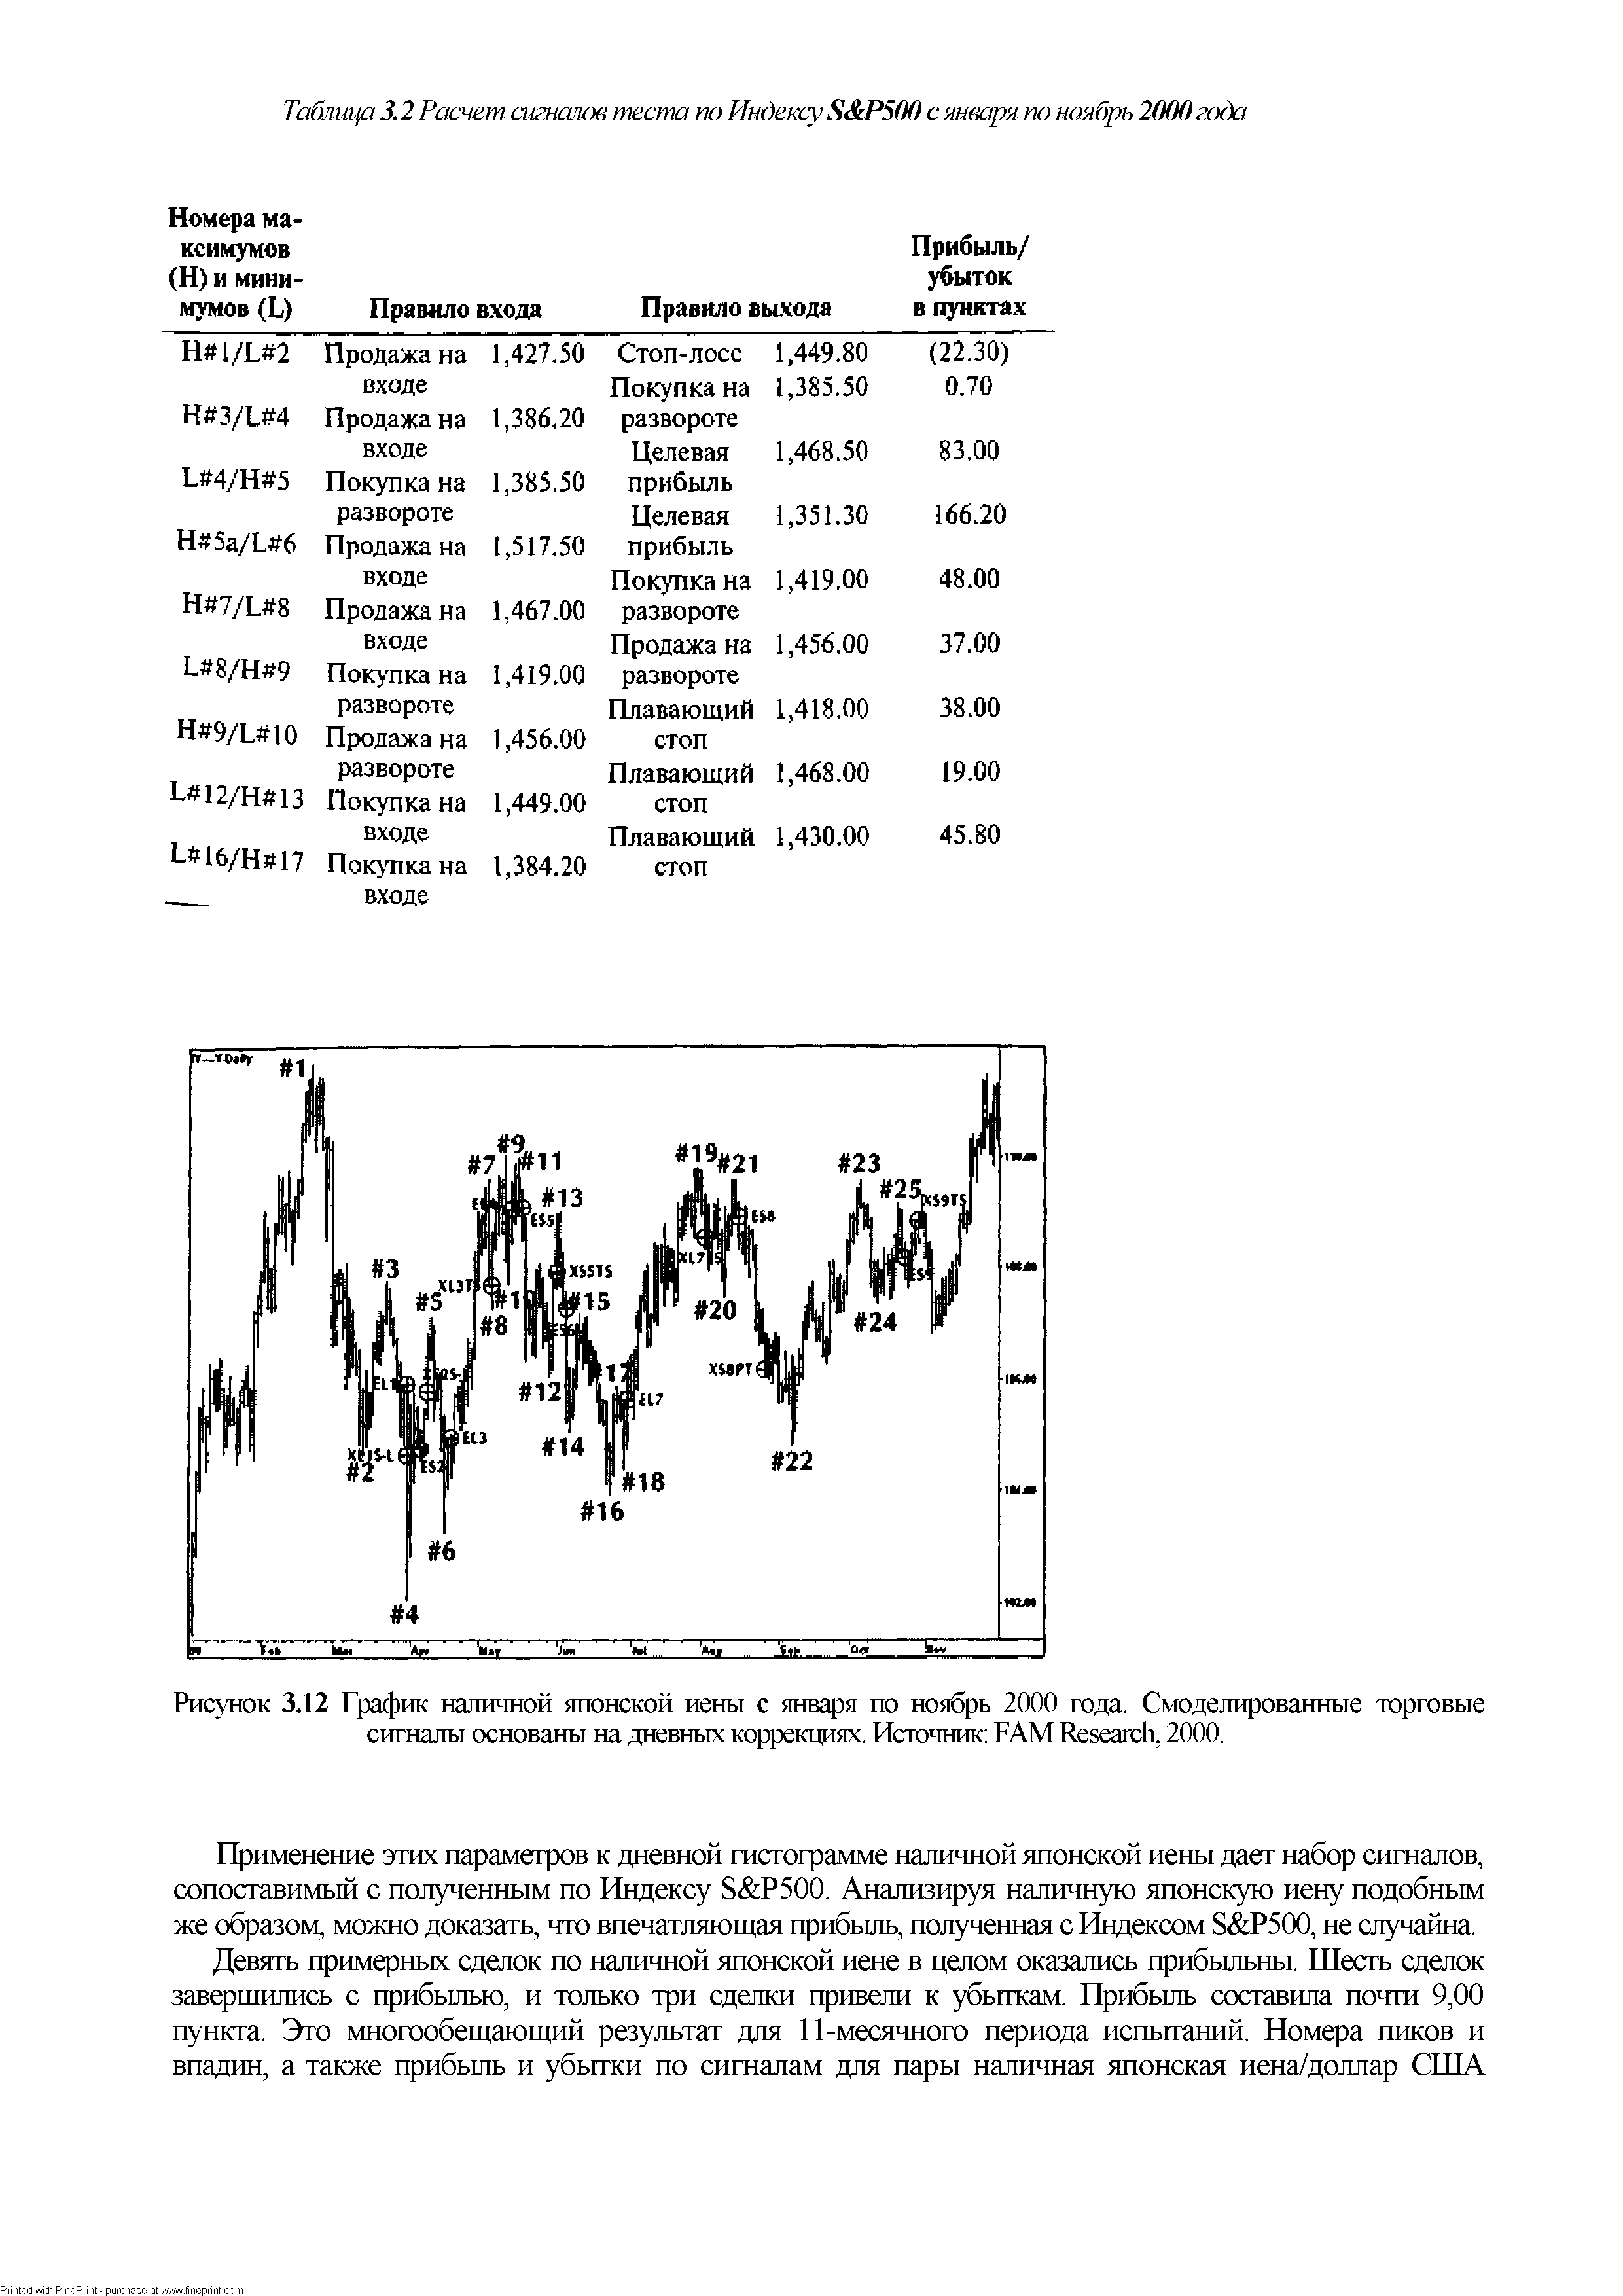 Таблица 3.2 Расчет сигналов теста по Индексу S P500 с января по ноябрь 2000 года
